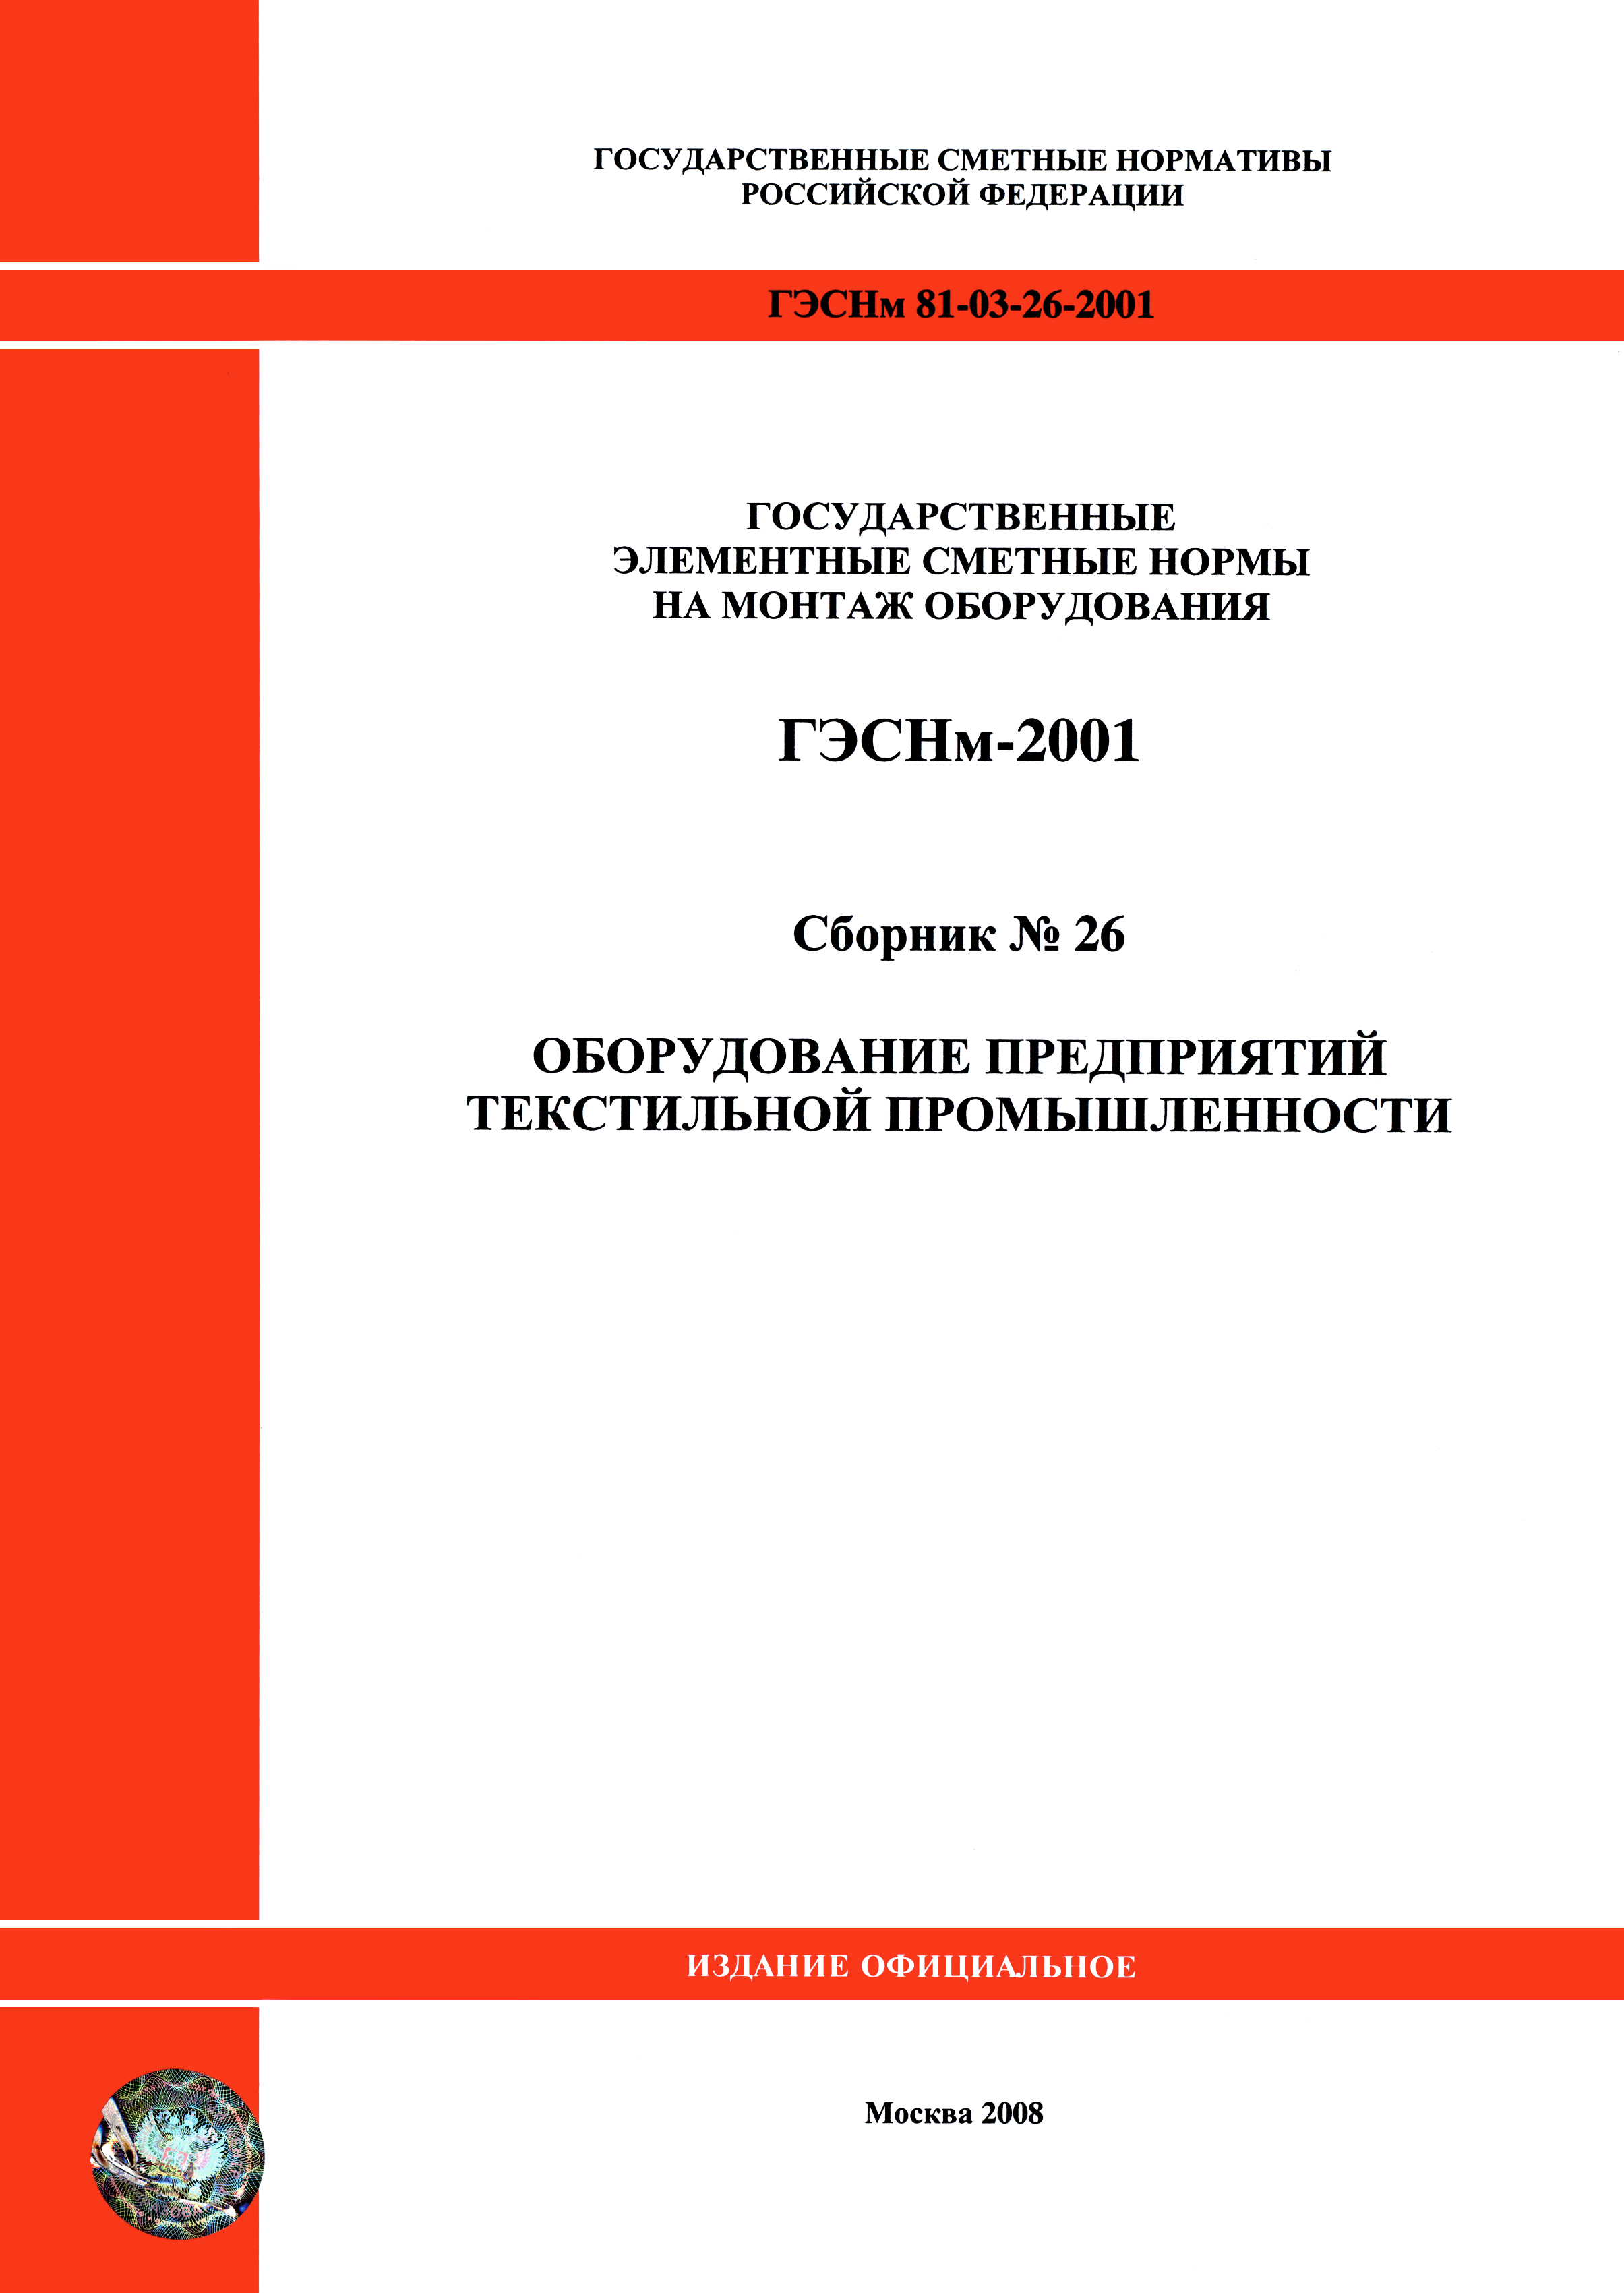 ГЭСНм 2001-26